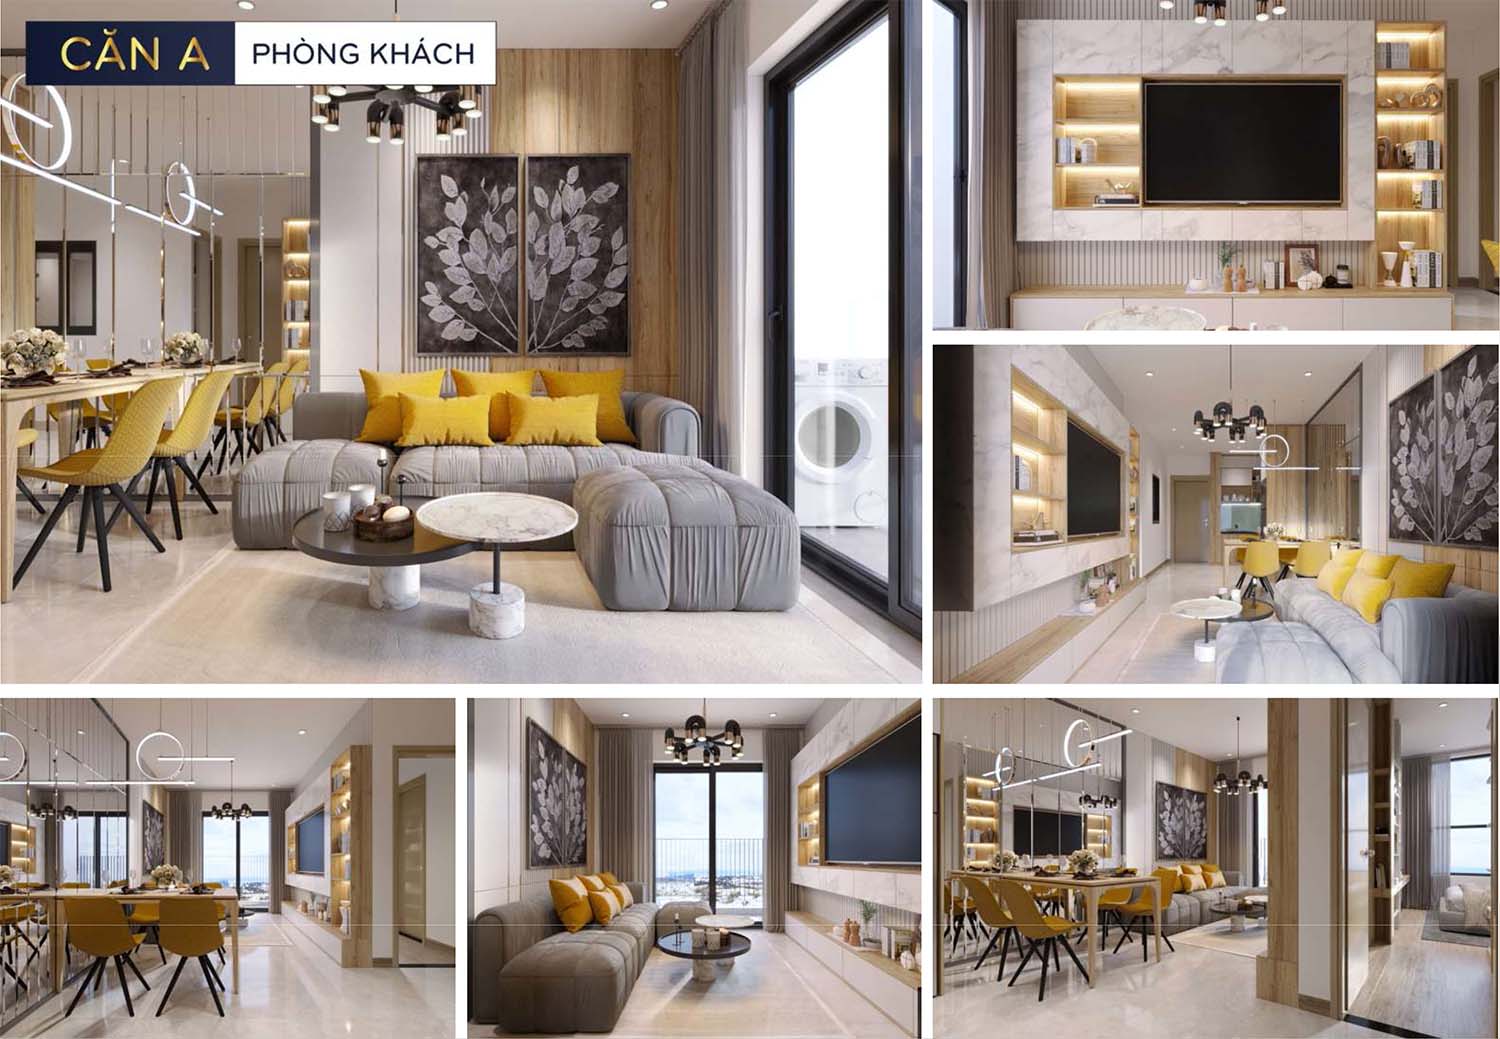 Hình ảnh thiết kế nhà mẫu Bcons Polaris căn A phòng khách